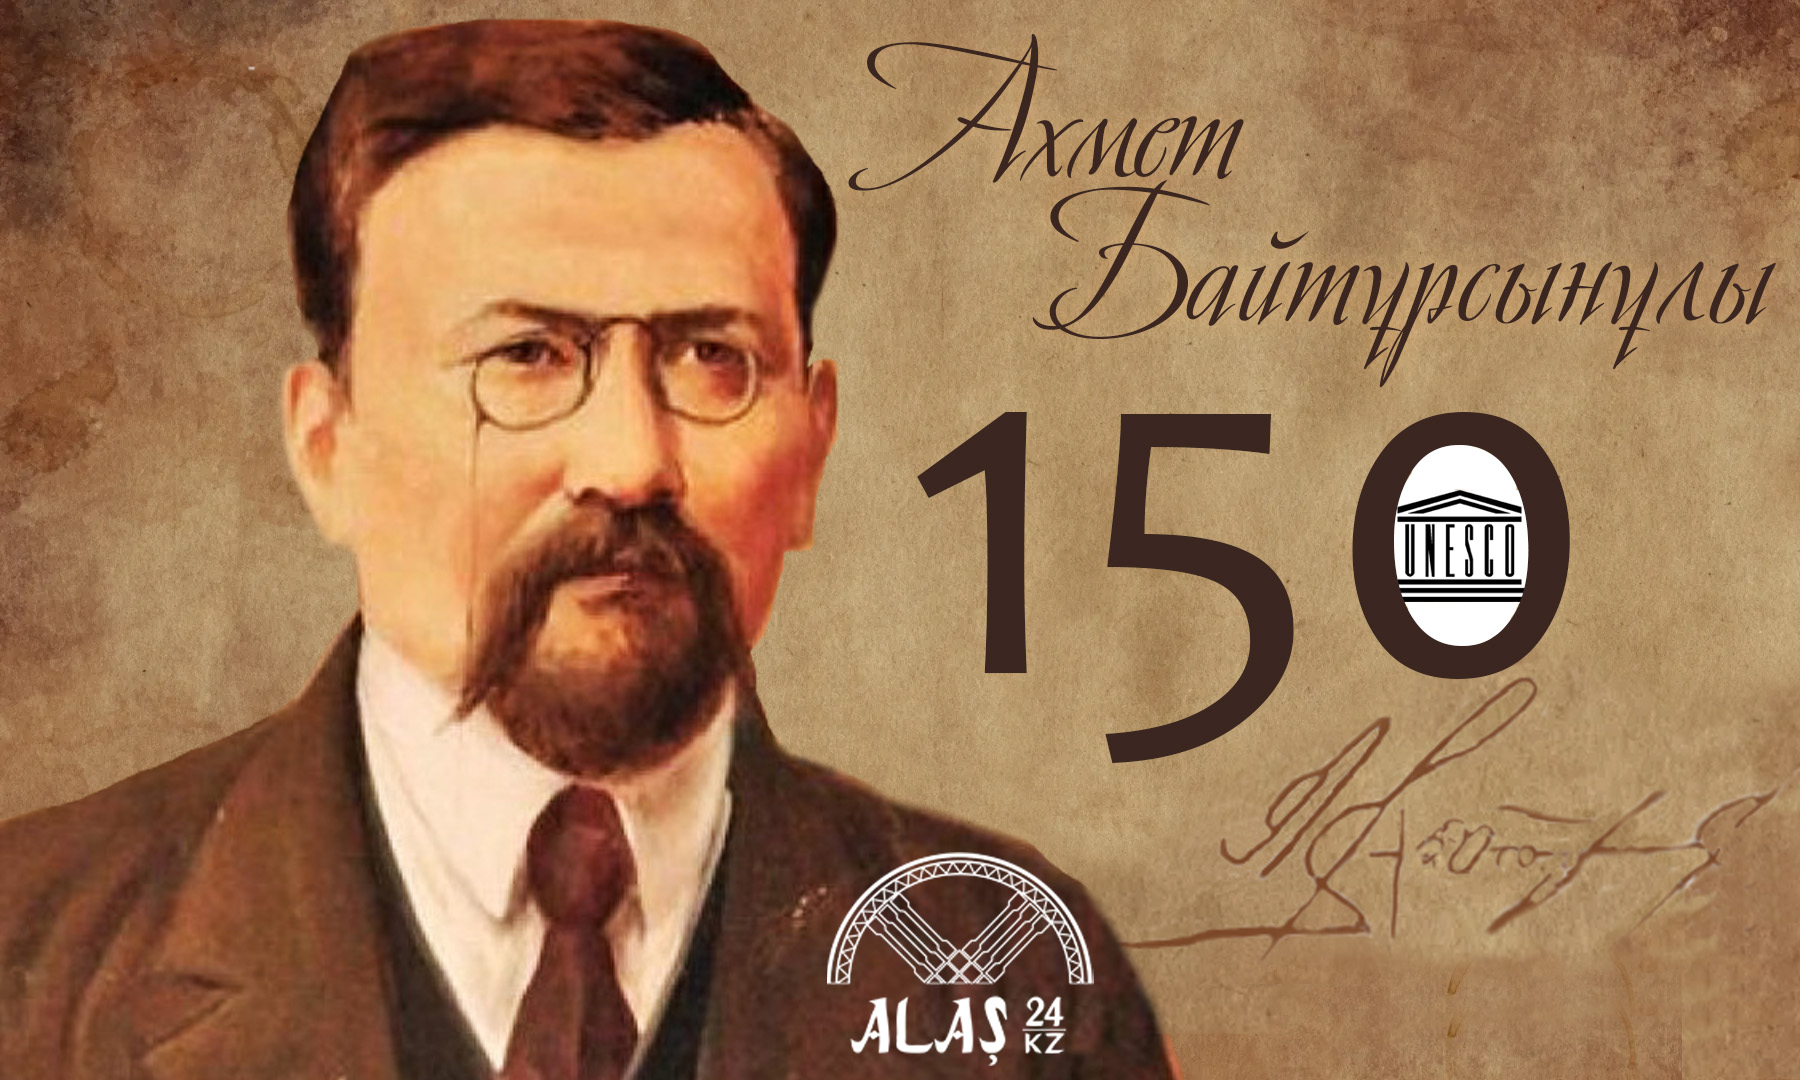 Ұлт ұстазы Ахмет Байтұрсынұлының туғанына 150 жыл